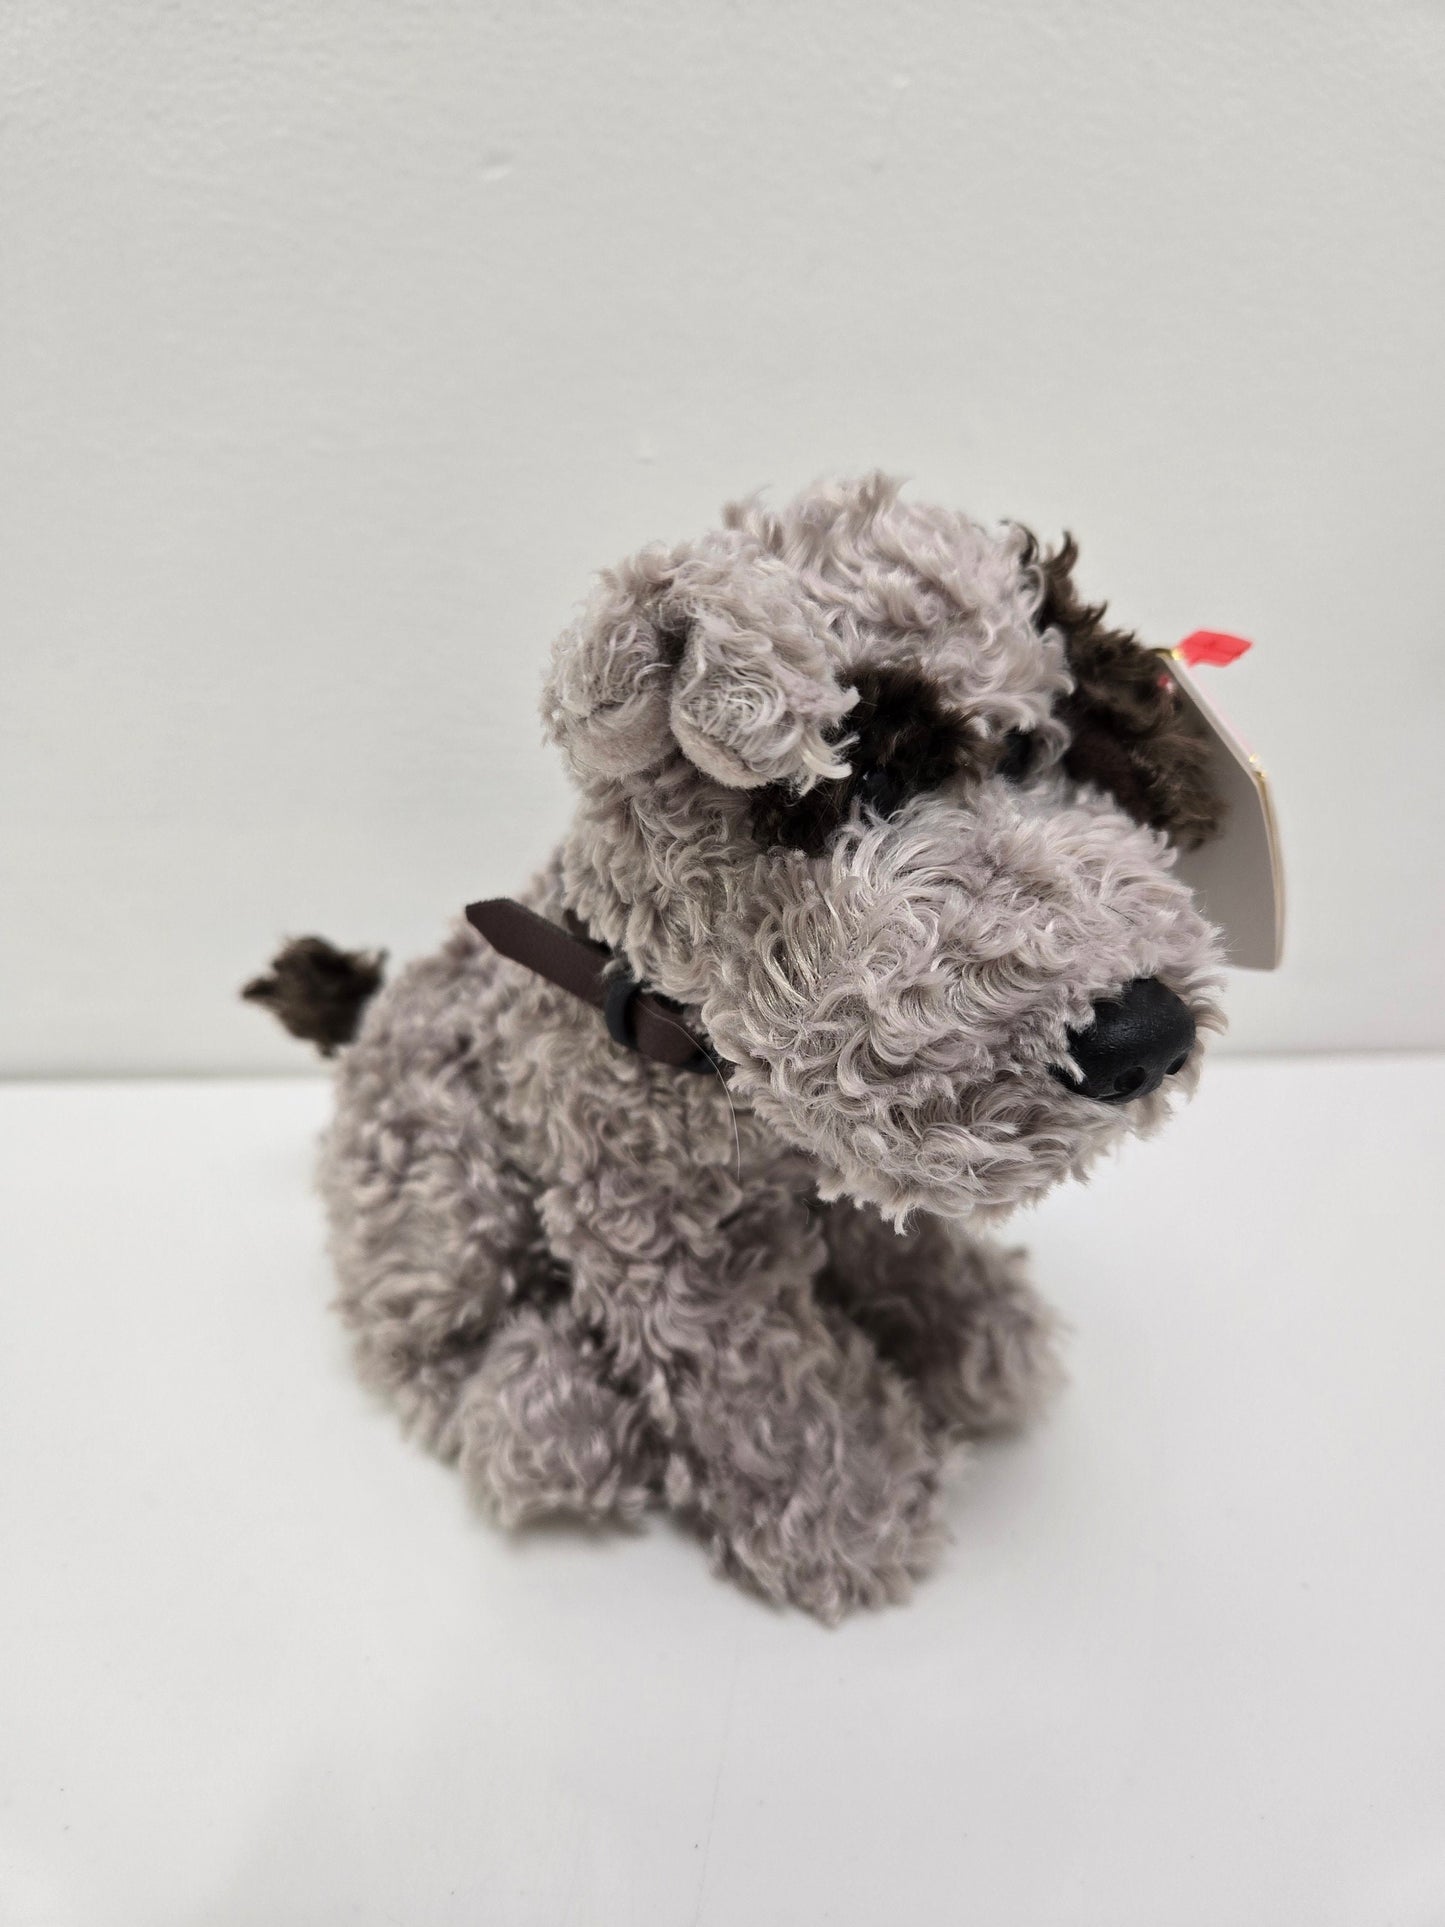 Ty Beanie Baby “Fizzer” the Schnauzer Dog Plushie (6.5 inch)